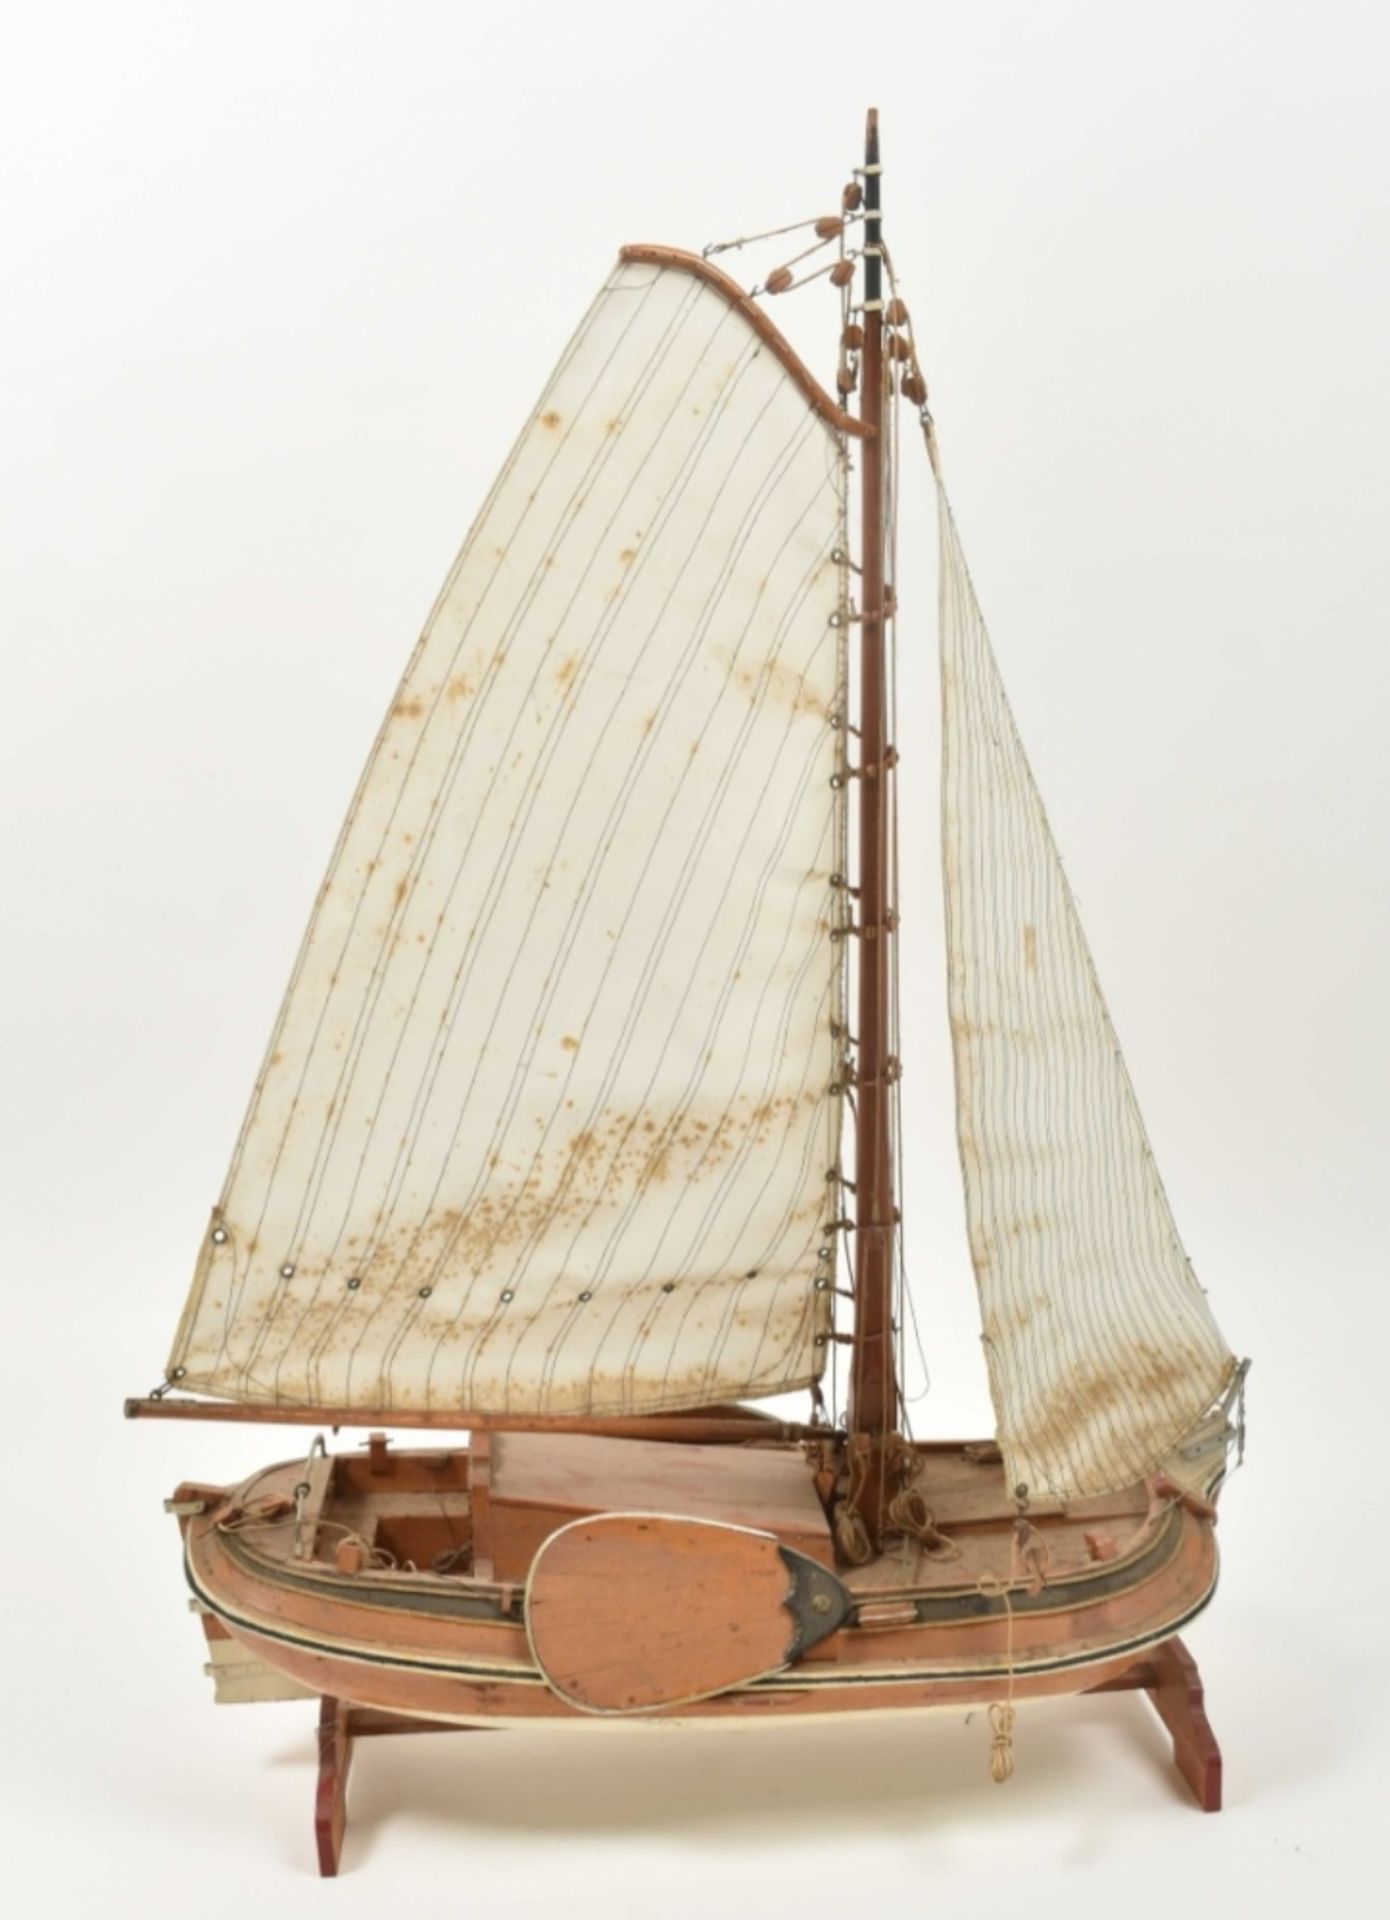 Historic model of sloop - Image 2 of 6